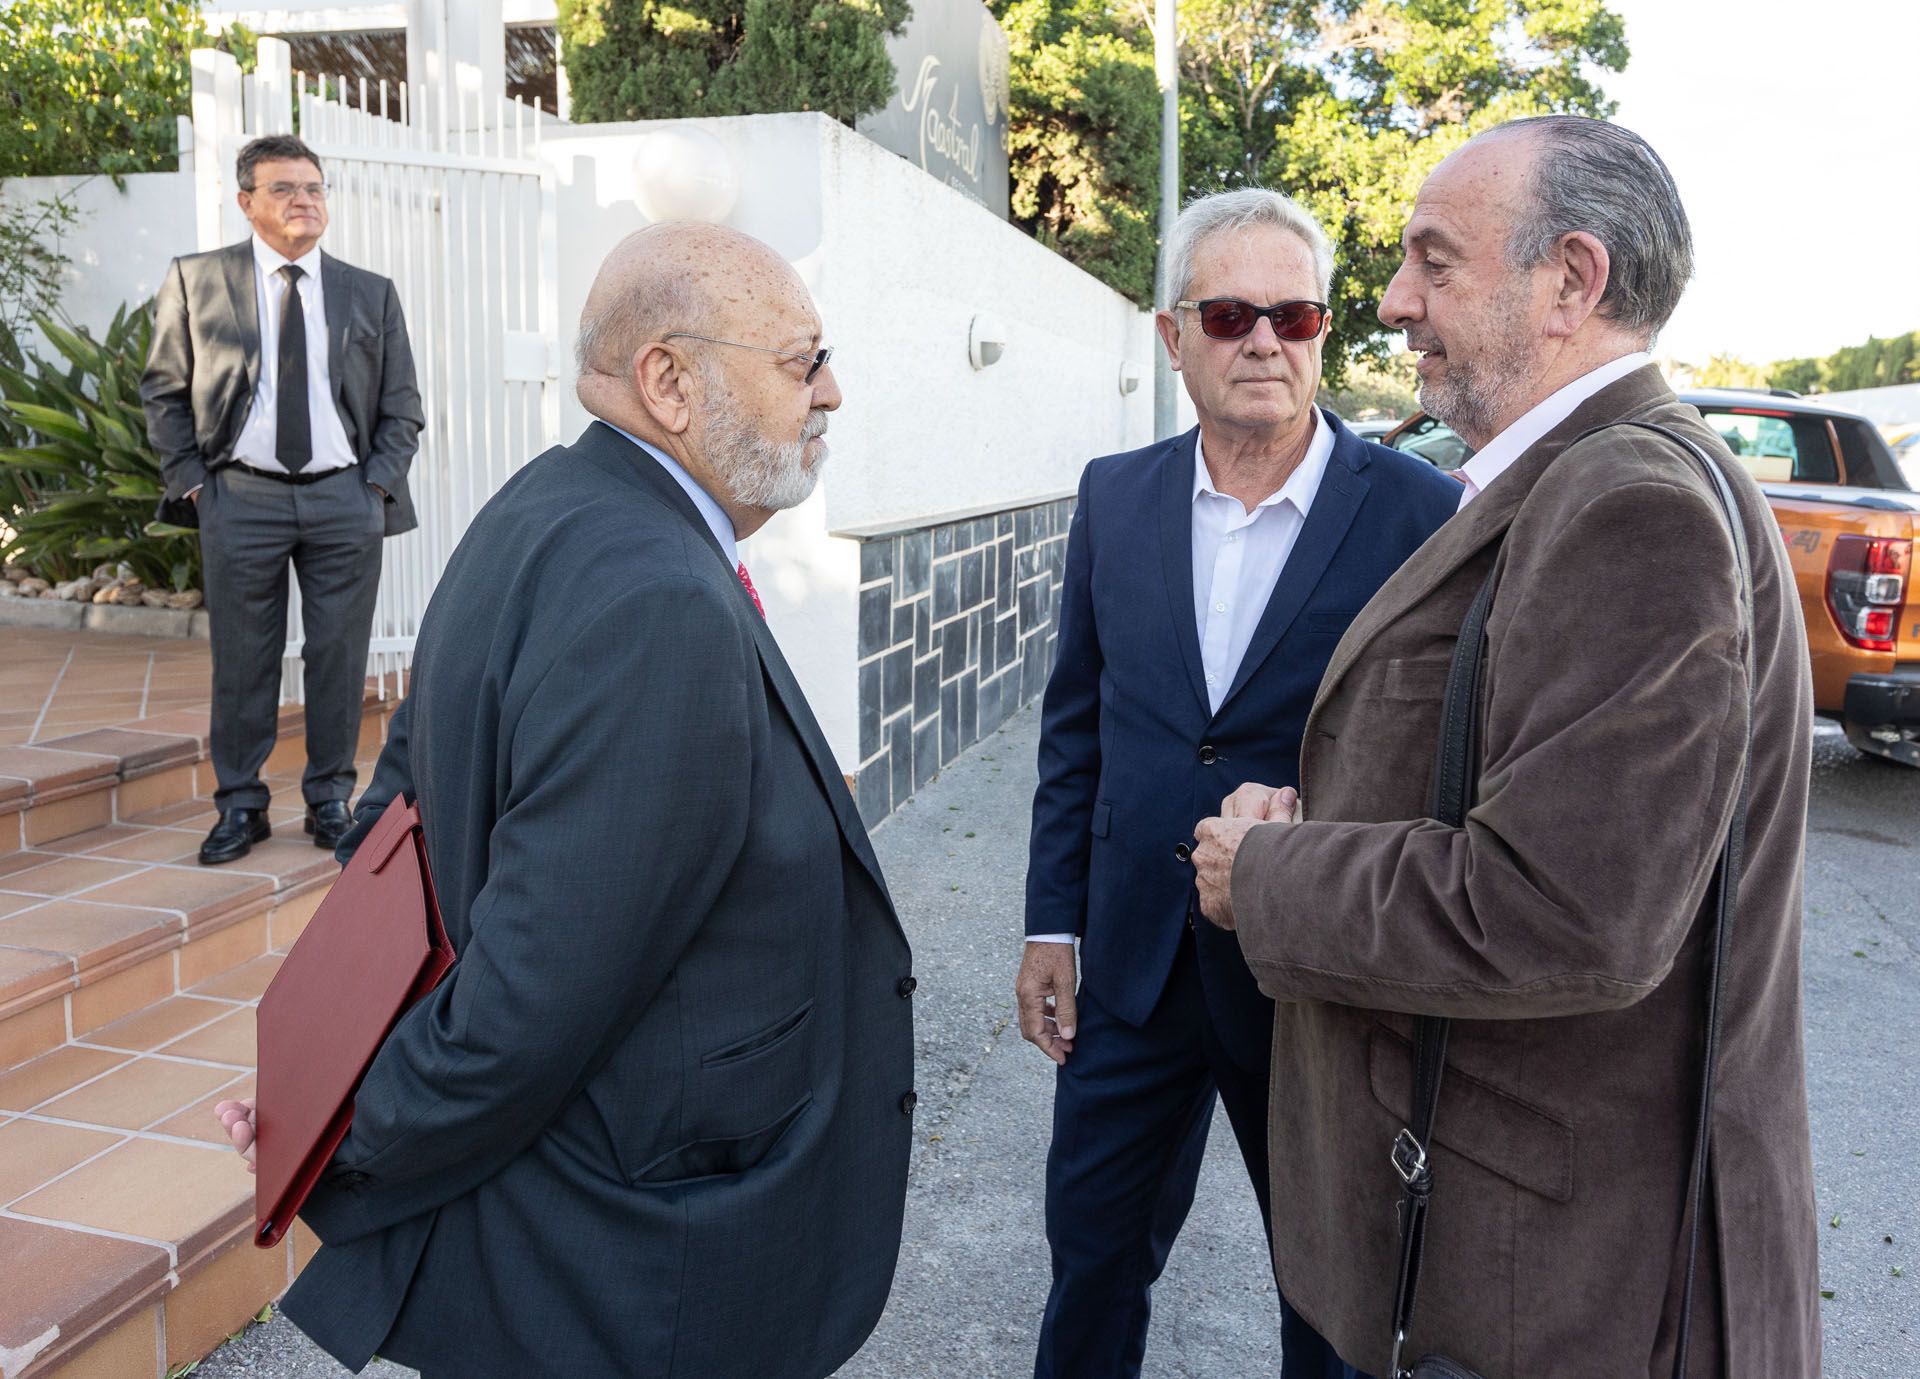 Conferencia del presidente del CIS, José Félix Tezanos, en Alicante